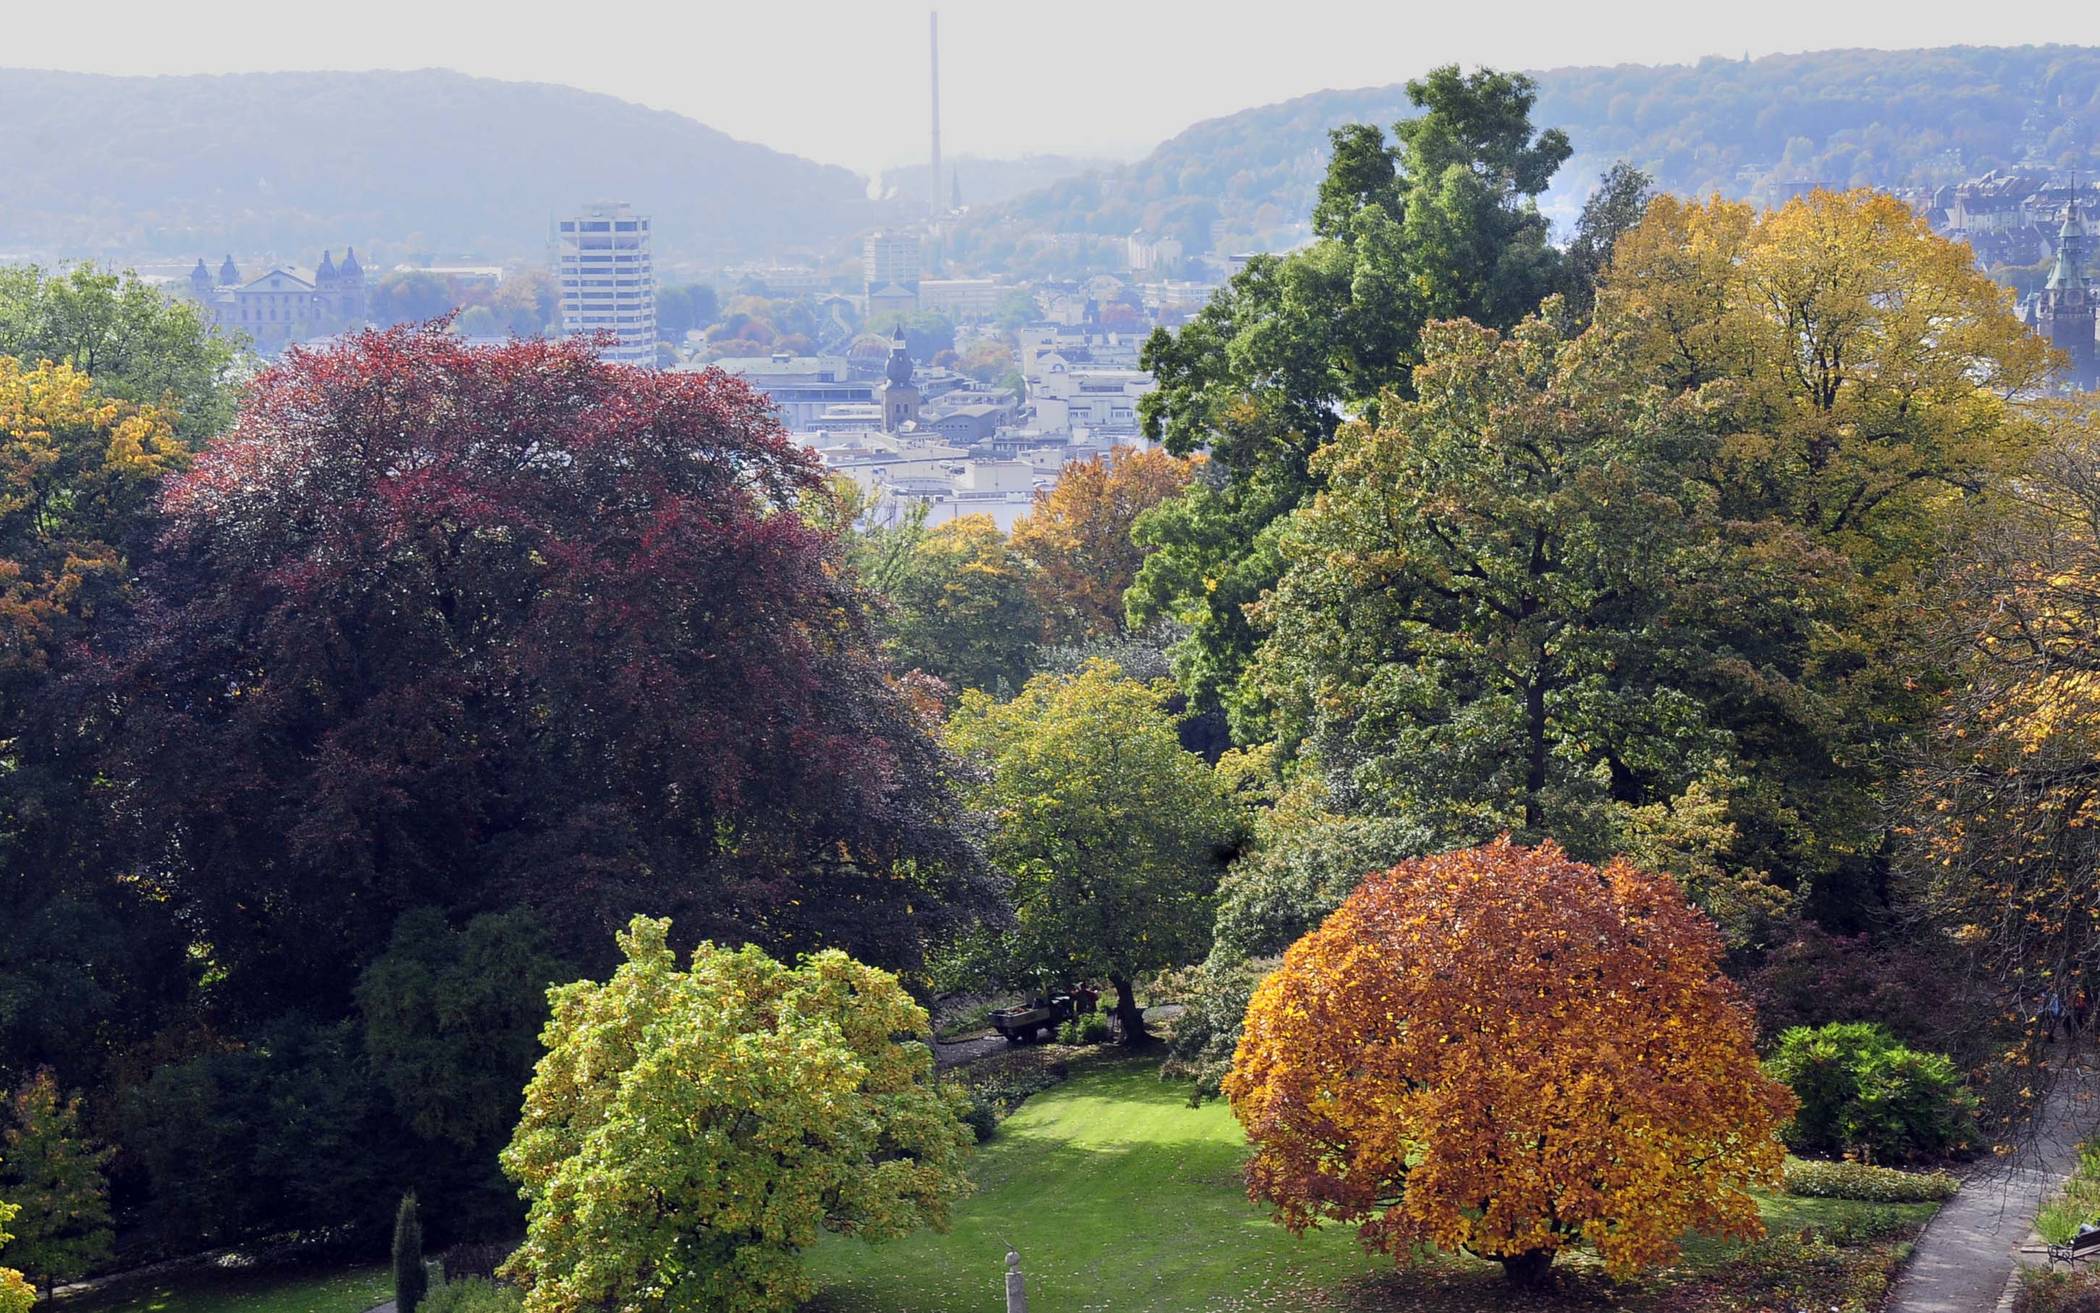  Wuppertal zählt zu den grünsten Großstädten in Deutschland. 